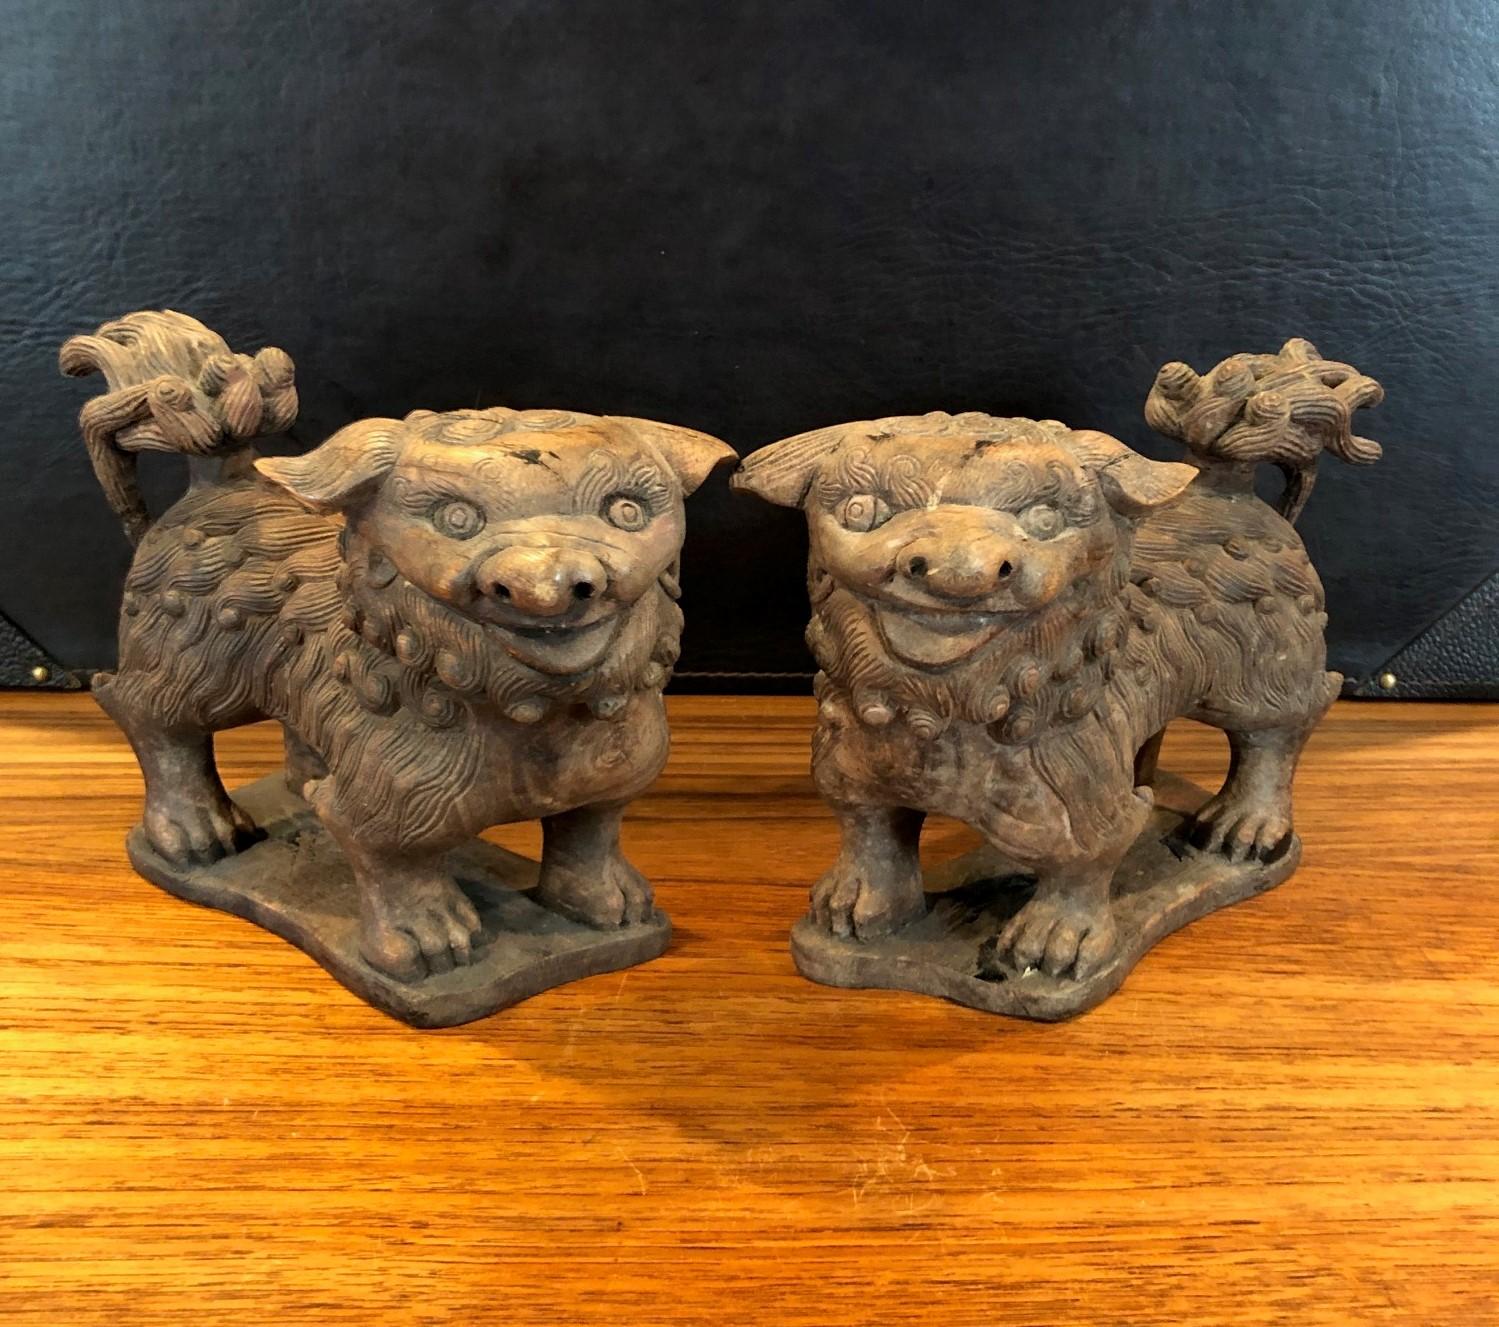 Ein sehr schönes Paar antiker handgeschnitzter chinesischer Foo Dogs oder Buchstützen, die, wie ich glaube, aus Ulme oder einer anderen Art von Hartholz gefertigt sind. Schöne Patina und schönes Aussehen!